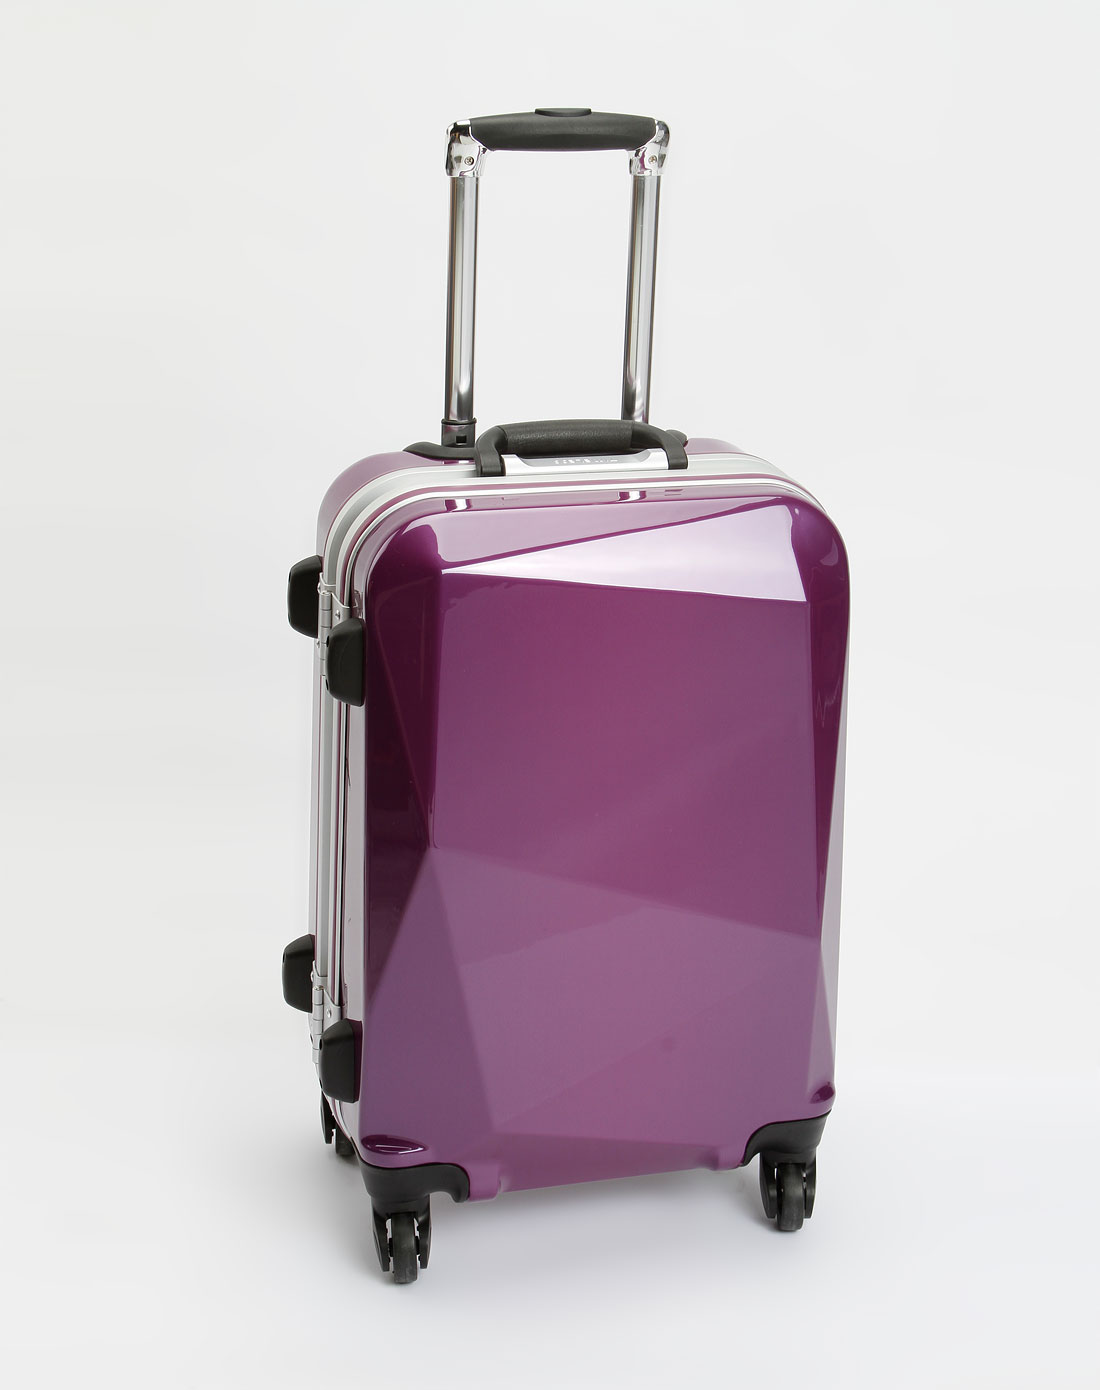 aircross箱包专场-中性紫色20寸时尚拉杆箱